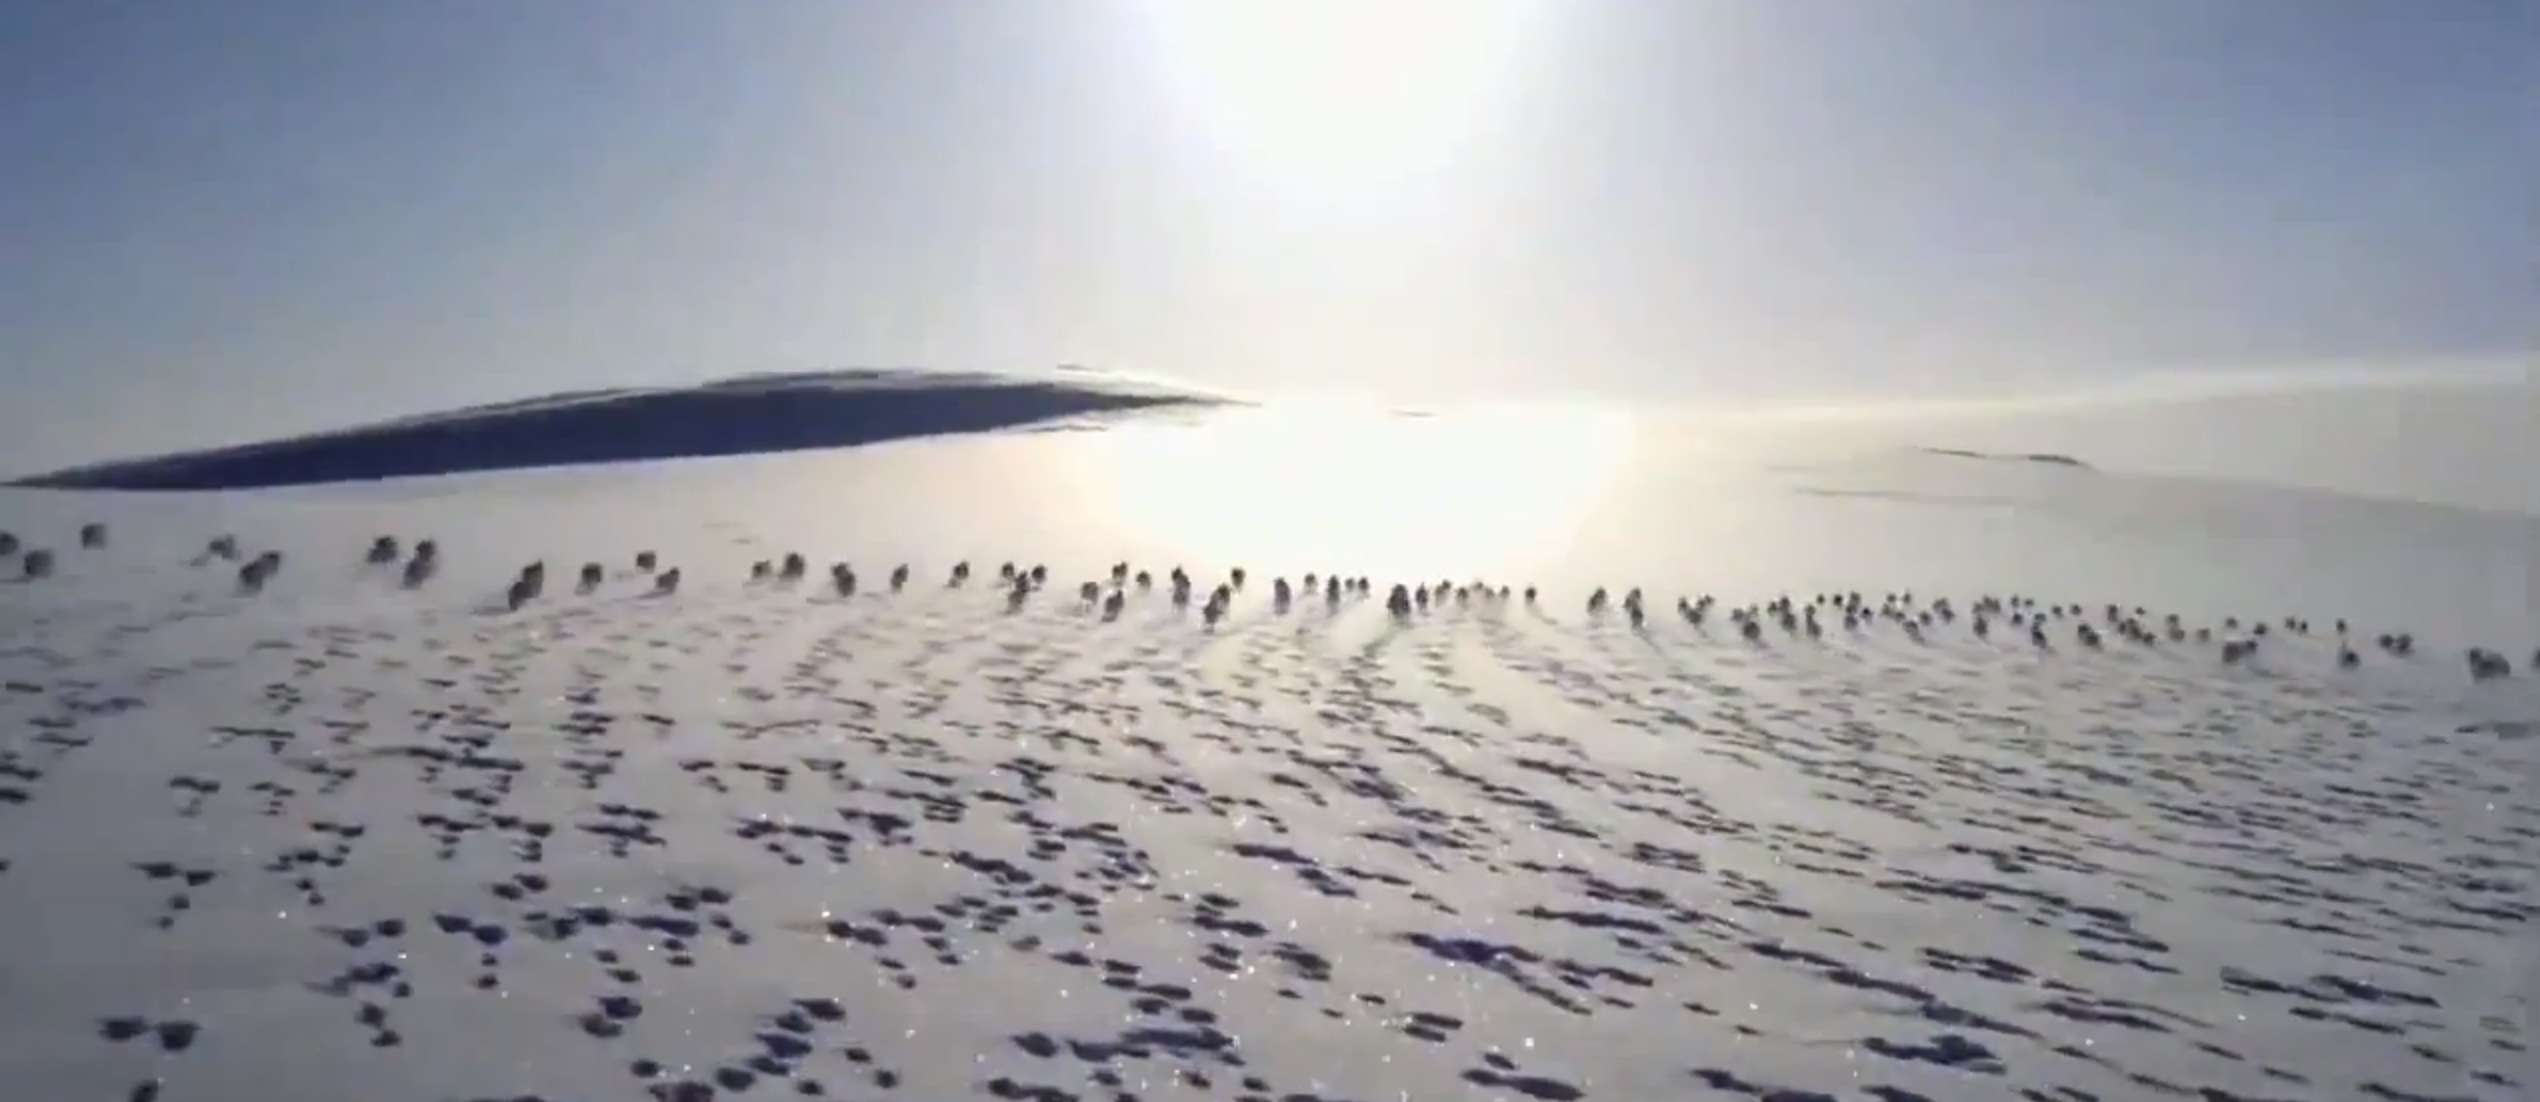 lapins courent sur la neige